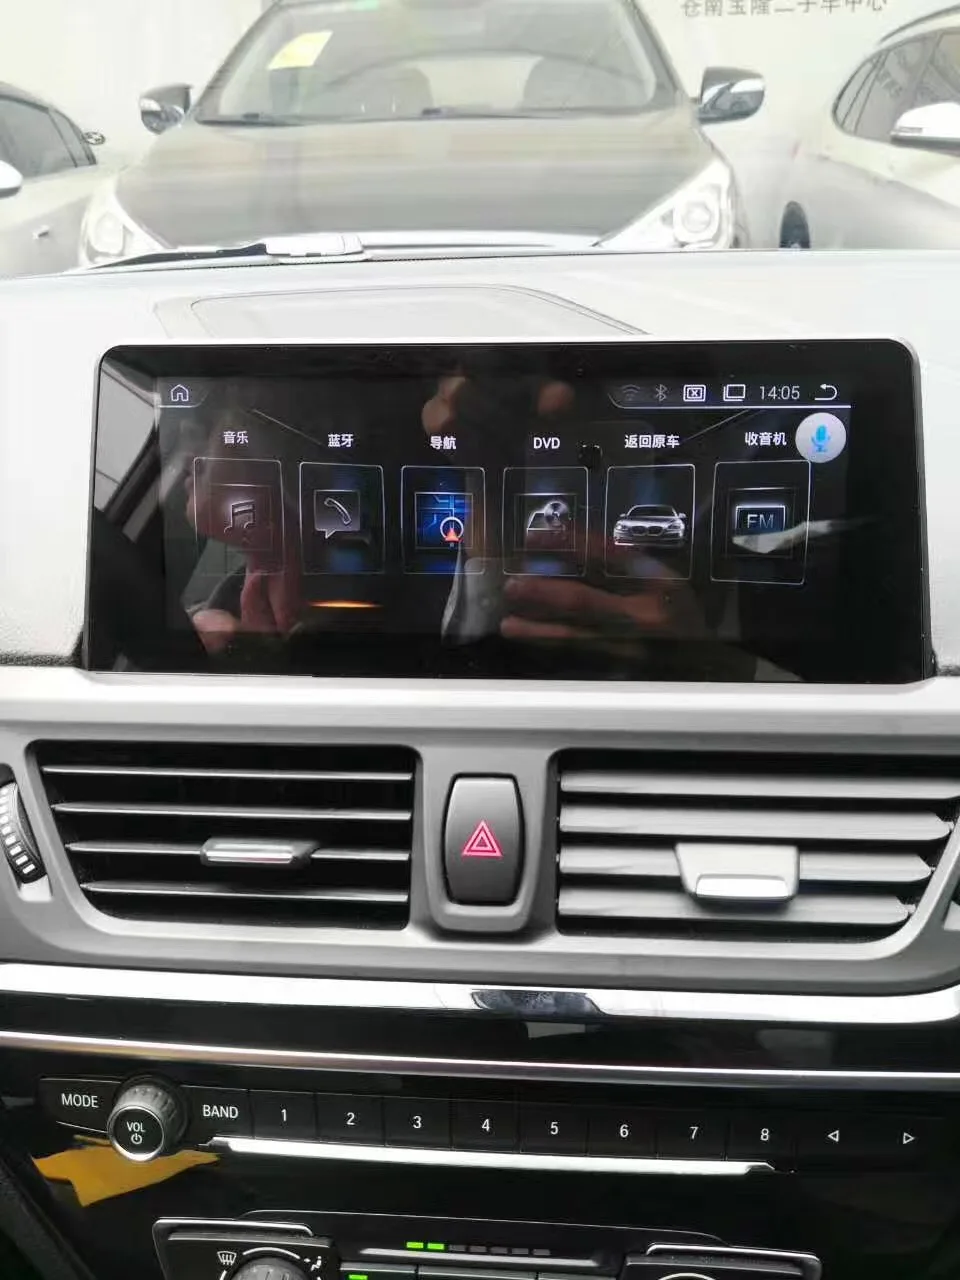 KiriNavi четырехъядерный Android 4,4 8,8 дюймовый автомобильный dvd-плеер для BMW 1 серии F20/F21 навигационная система